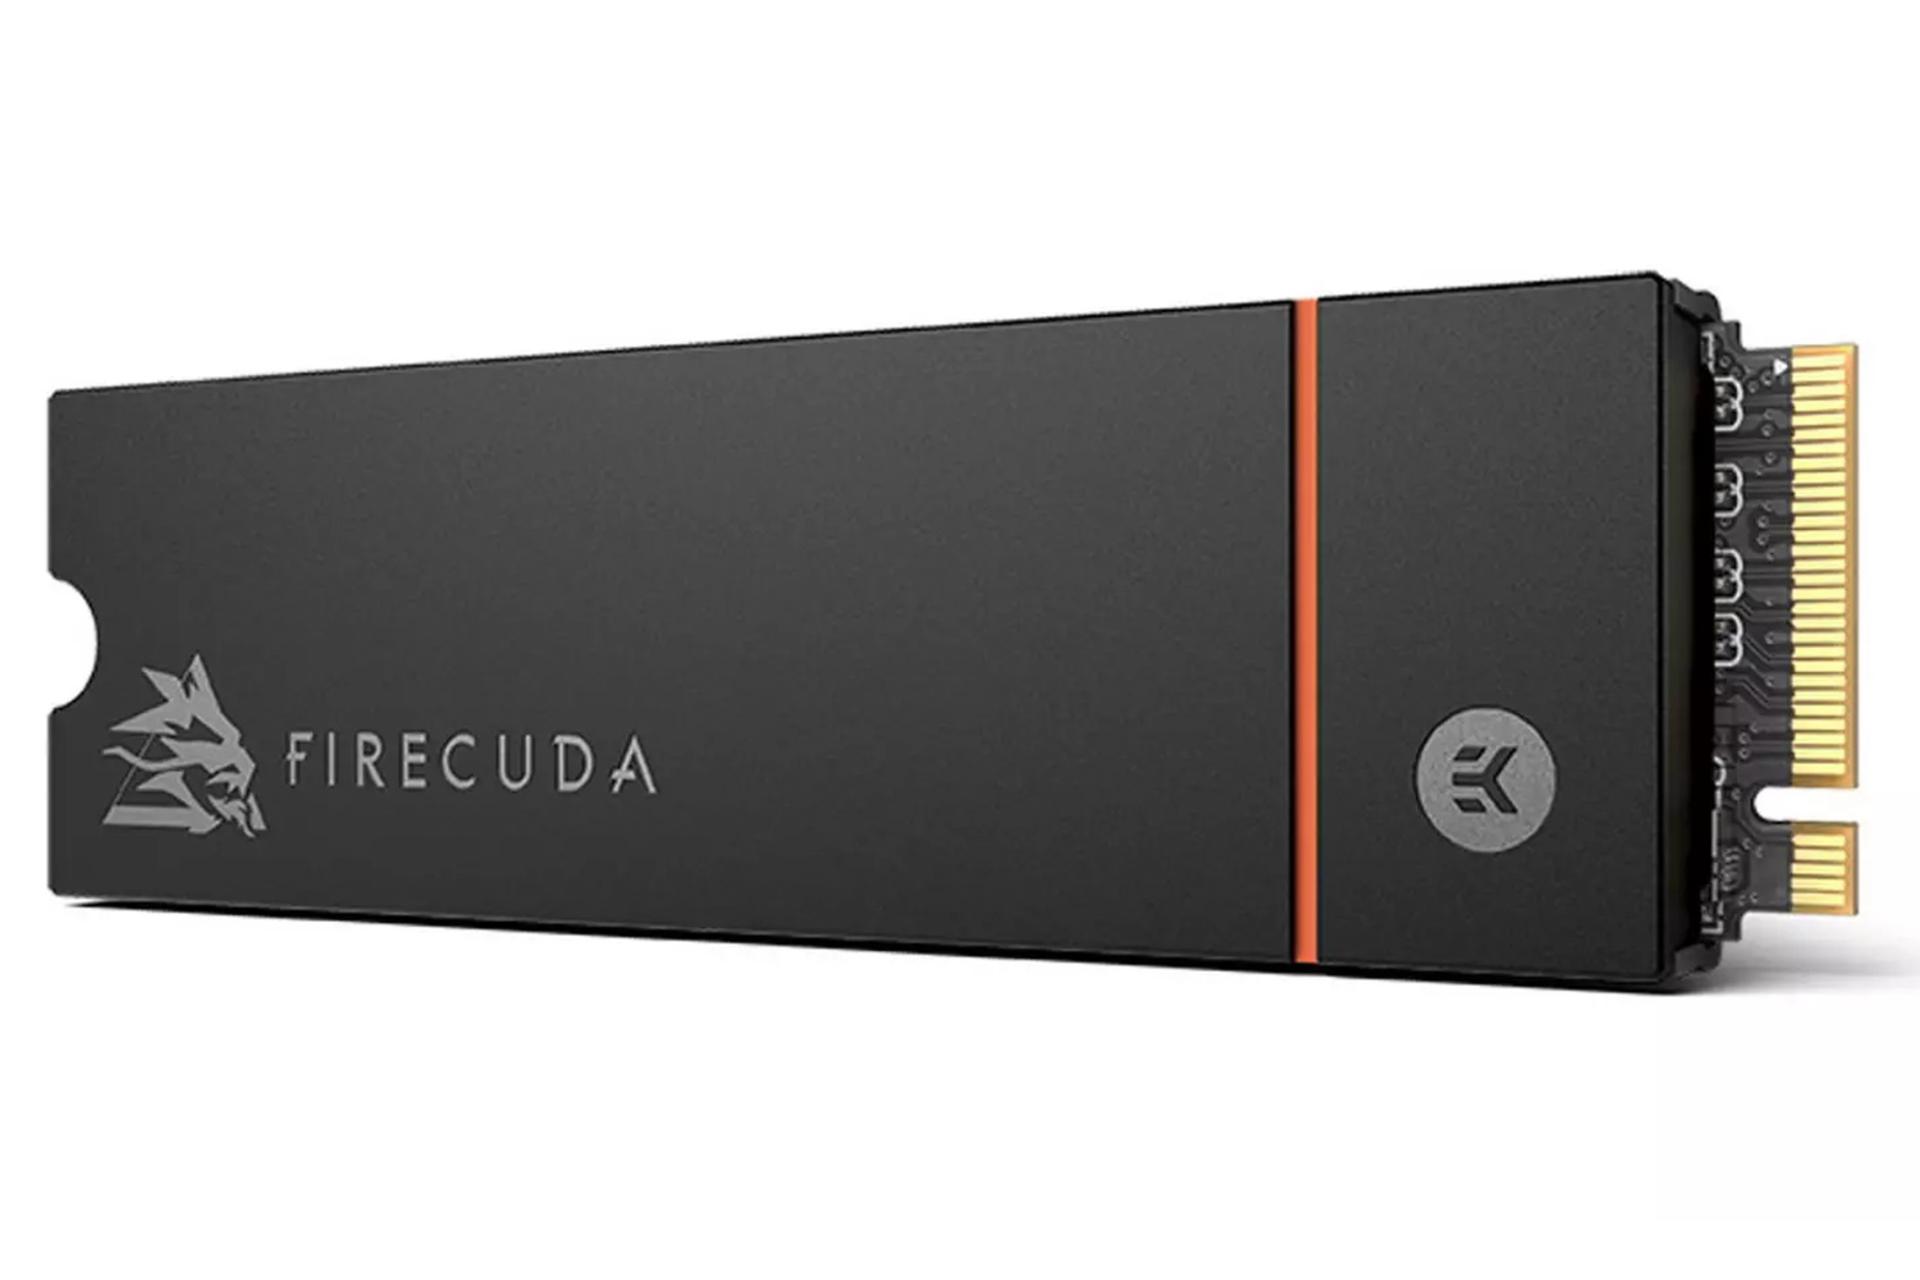 نمای جانبی SSD سیگیت FireCuda 530 Heatsink